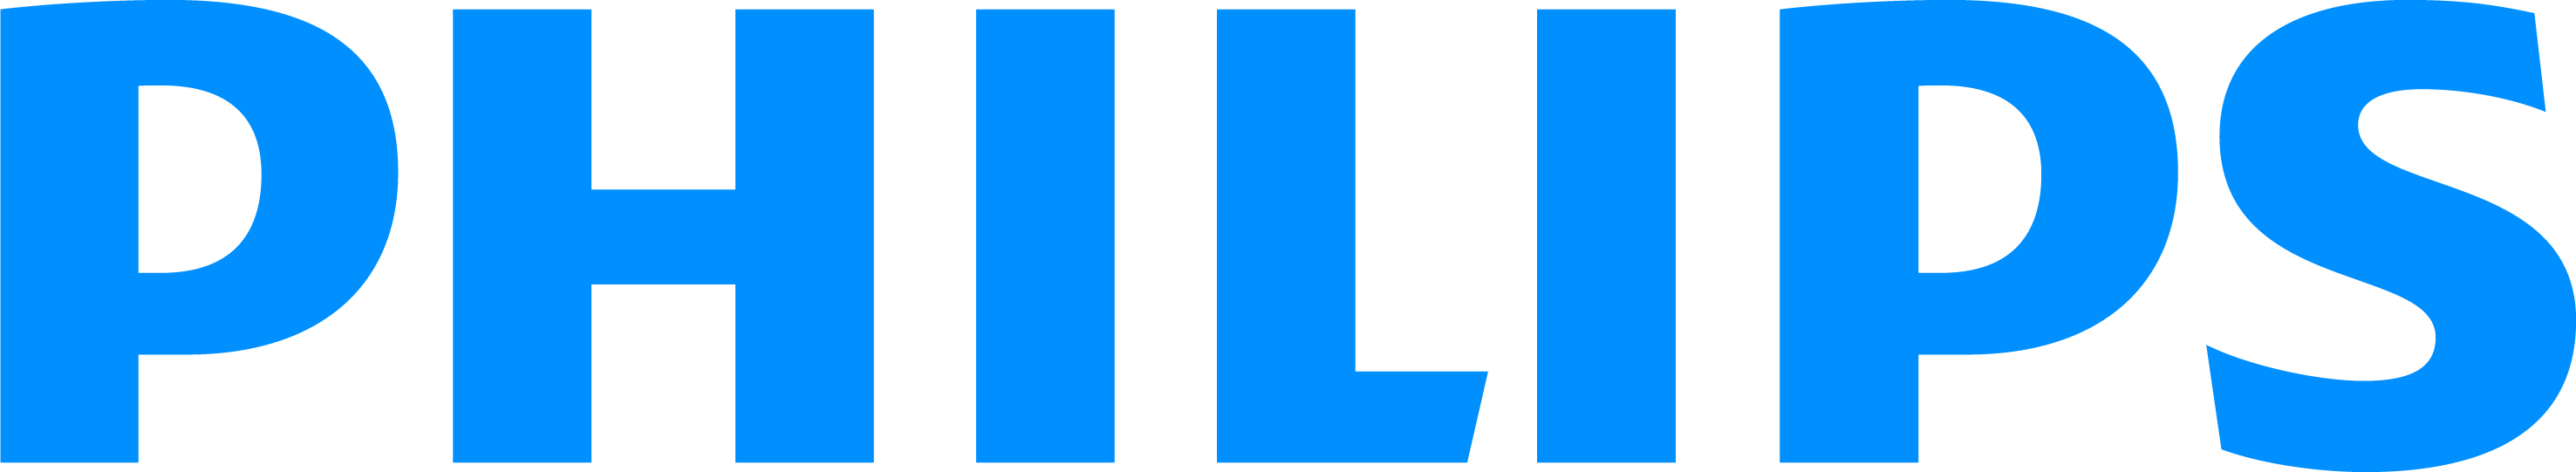 N'SEIGO AUTOMOBILES - logo Philips